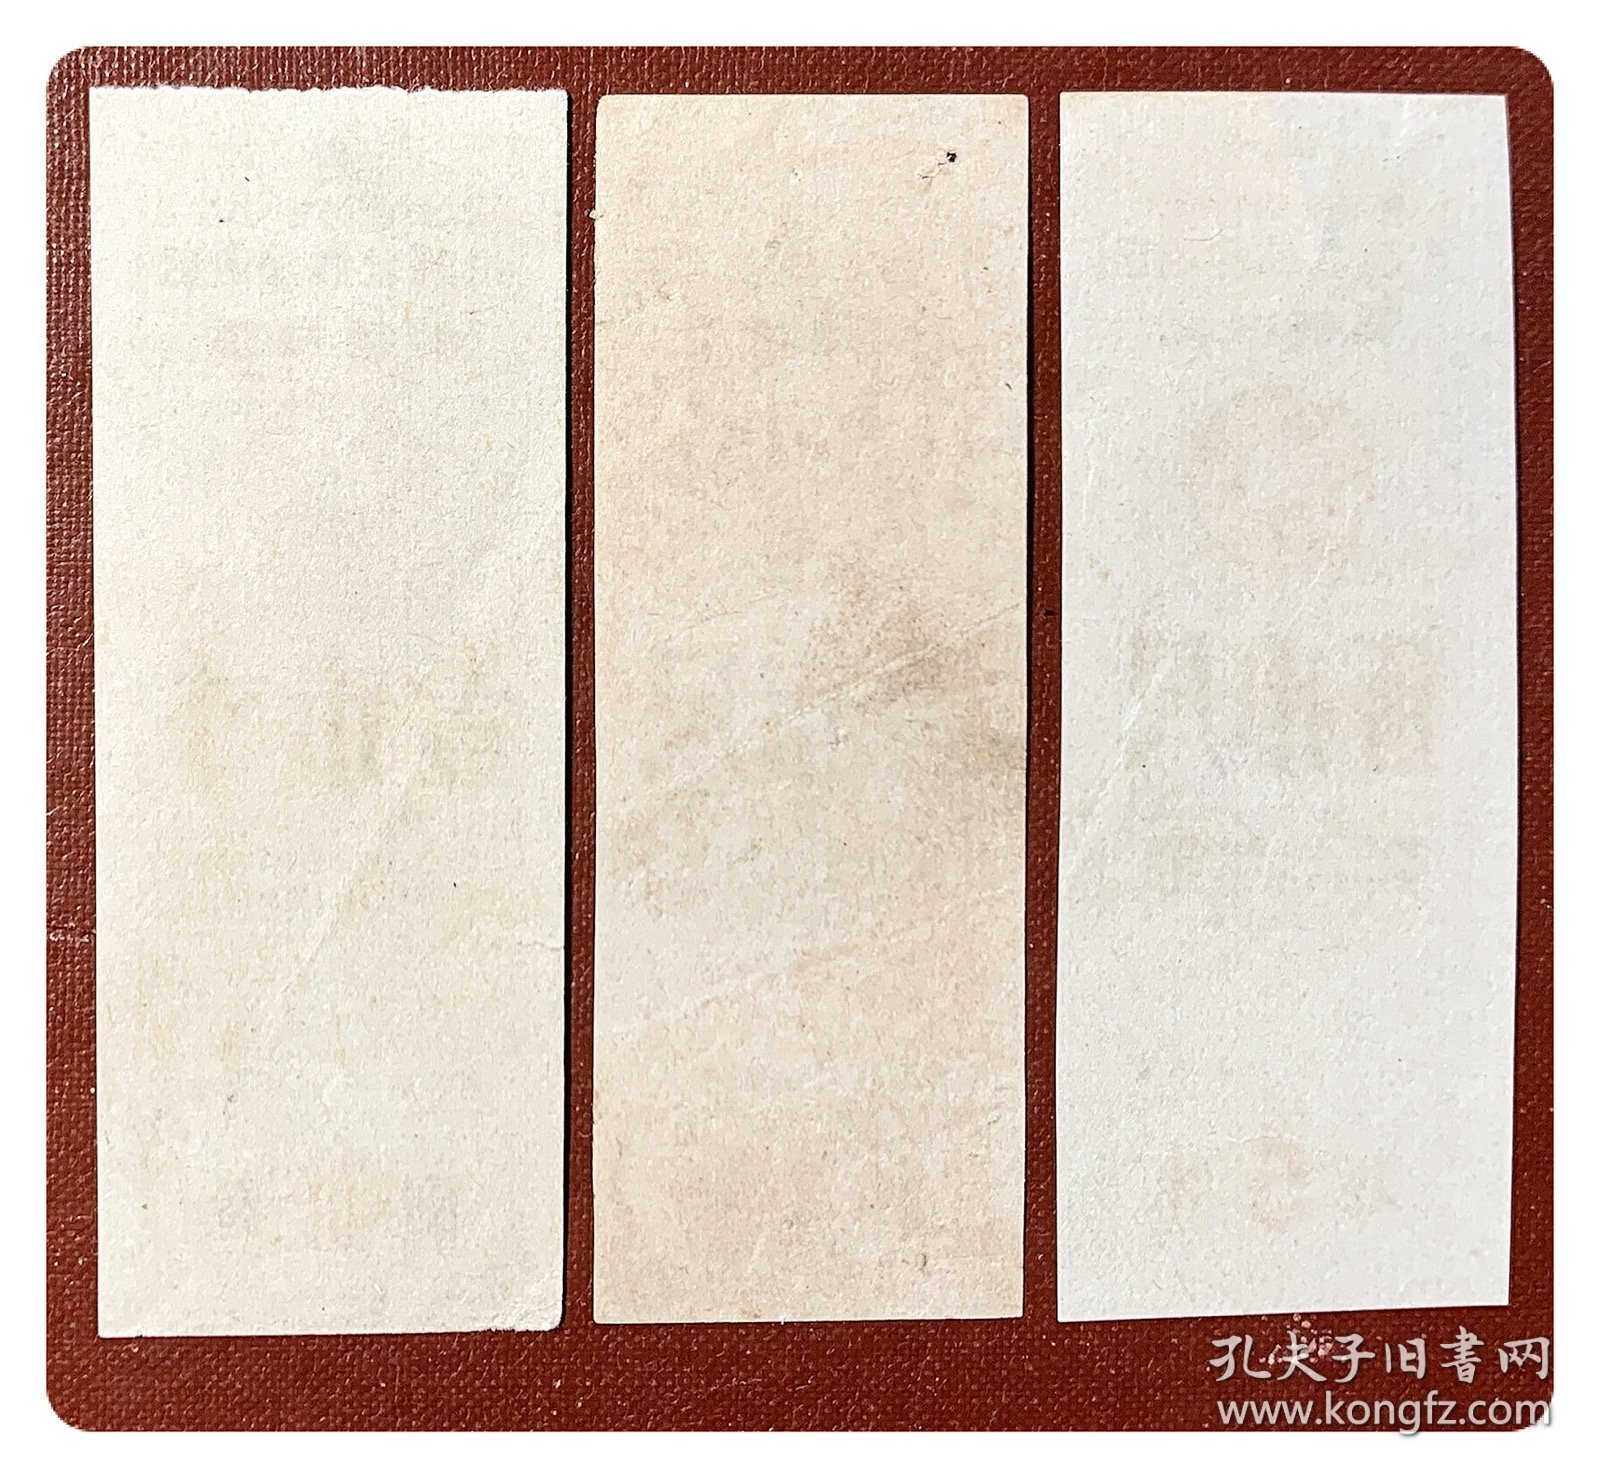 广西壮族自治区奖售布票1966.9～1967.12壹市寸、壹市尺及伍市尺各1枚，共3枚